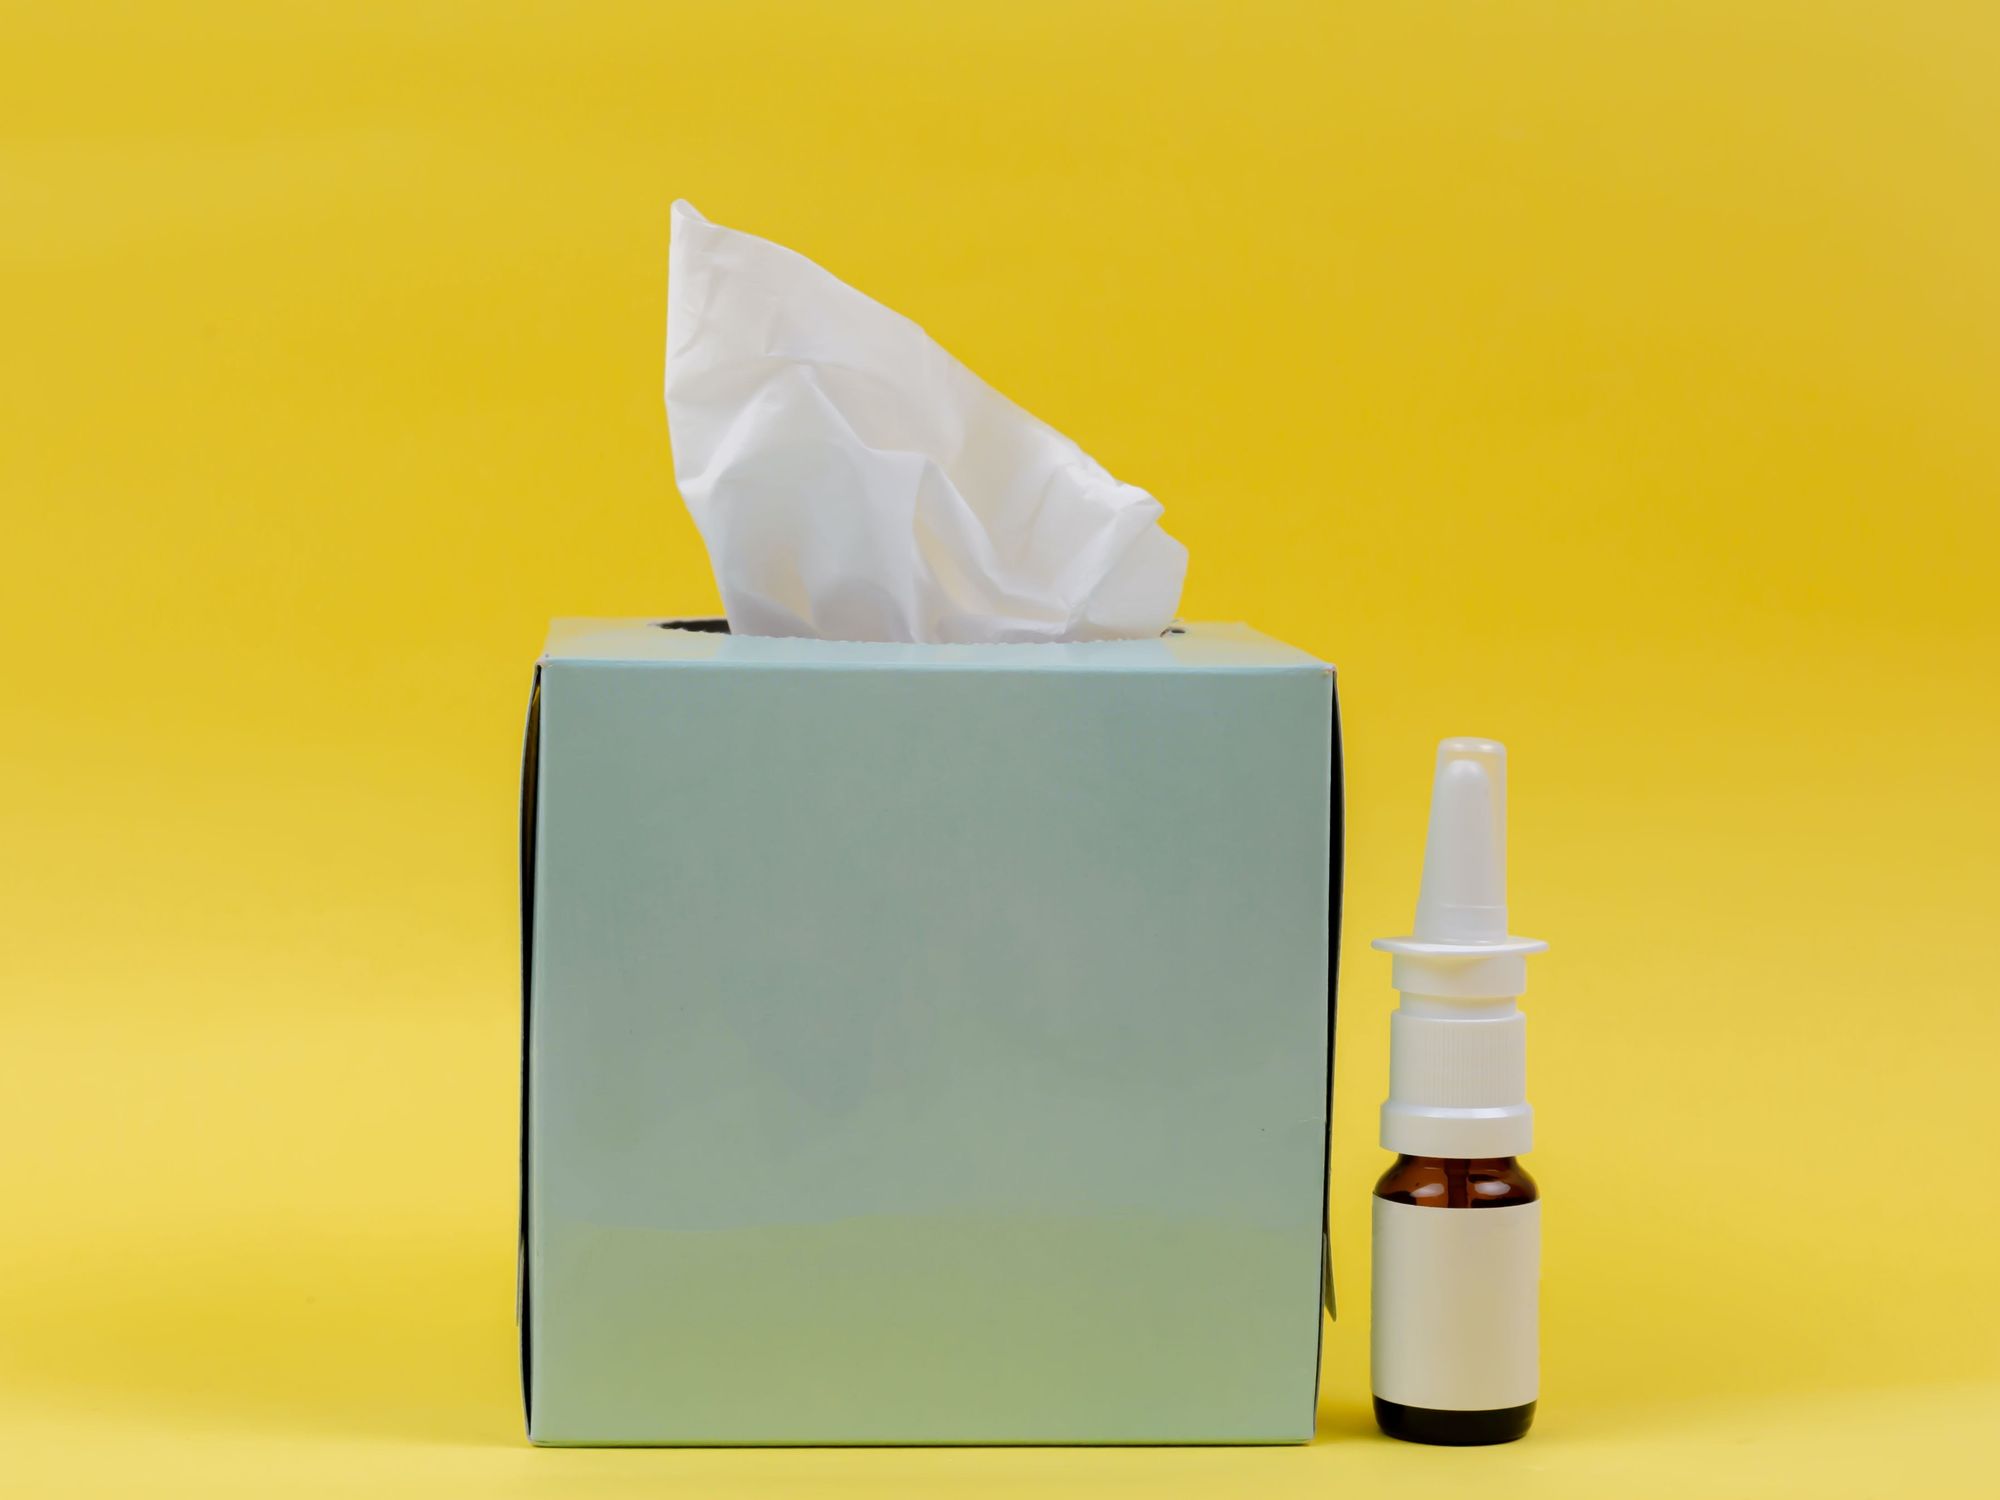 Box of tissues and nasal spray